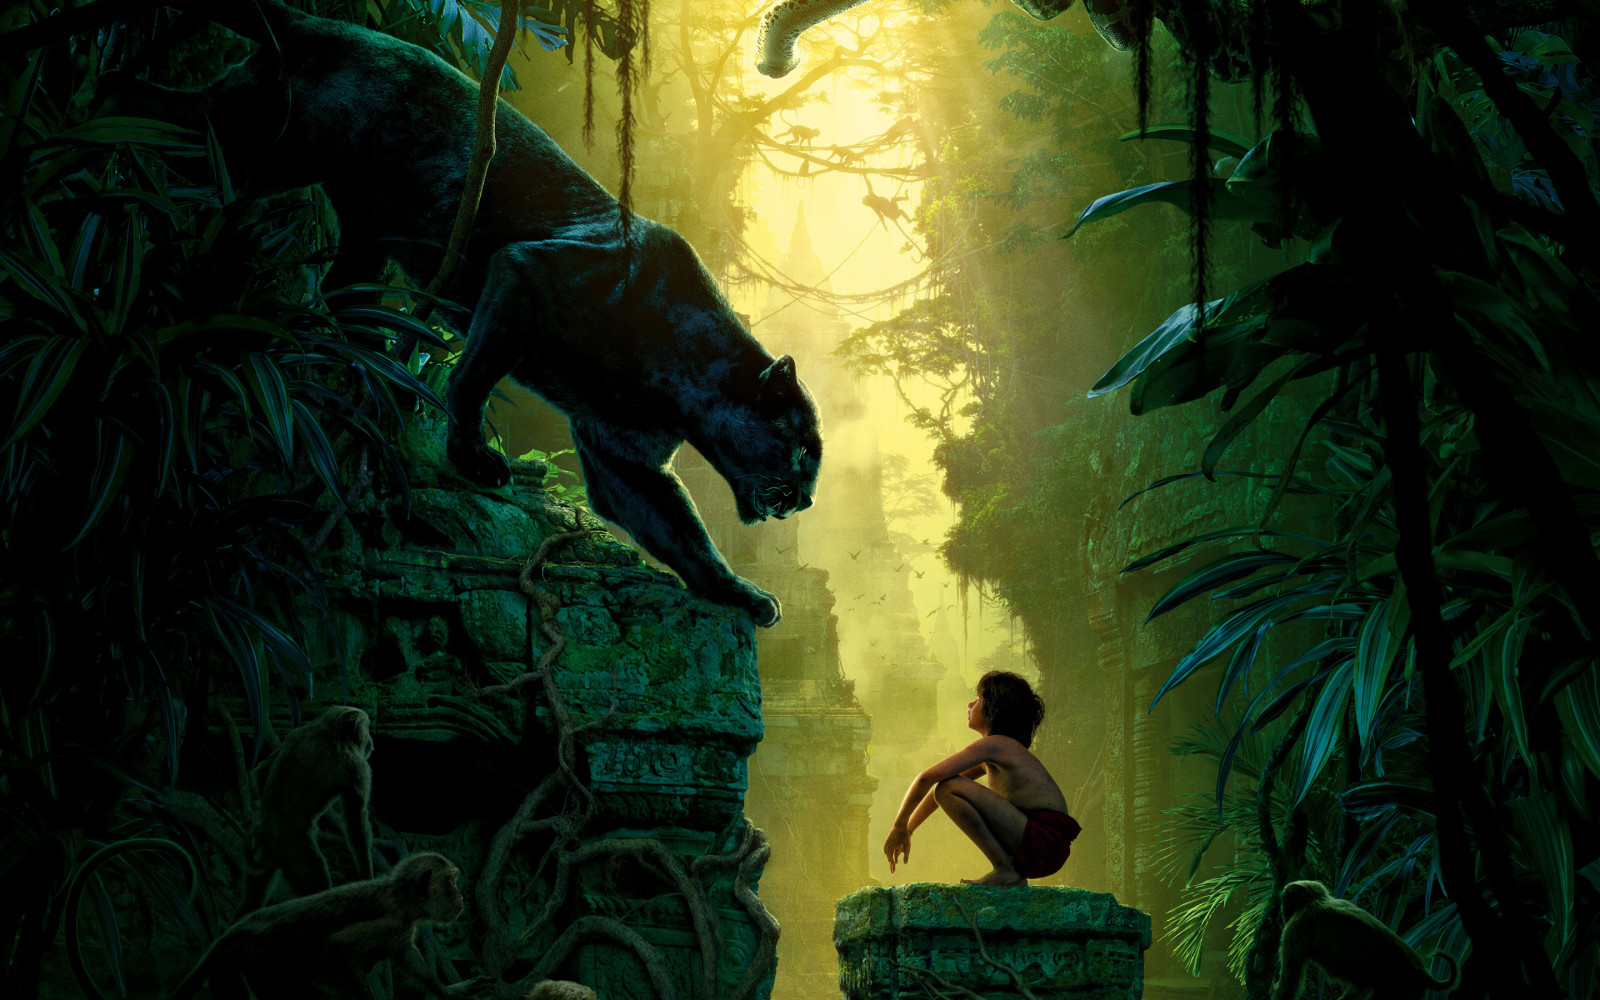 จินตนาการ, ลิง, นก, เด็กผู้ชาย, ป่า, เสือดำ, องุ่น, Mowgli